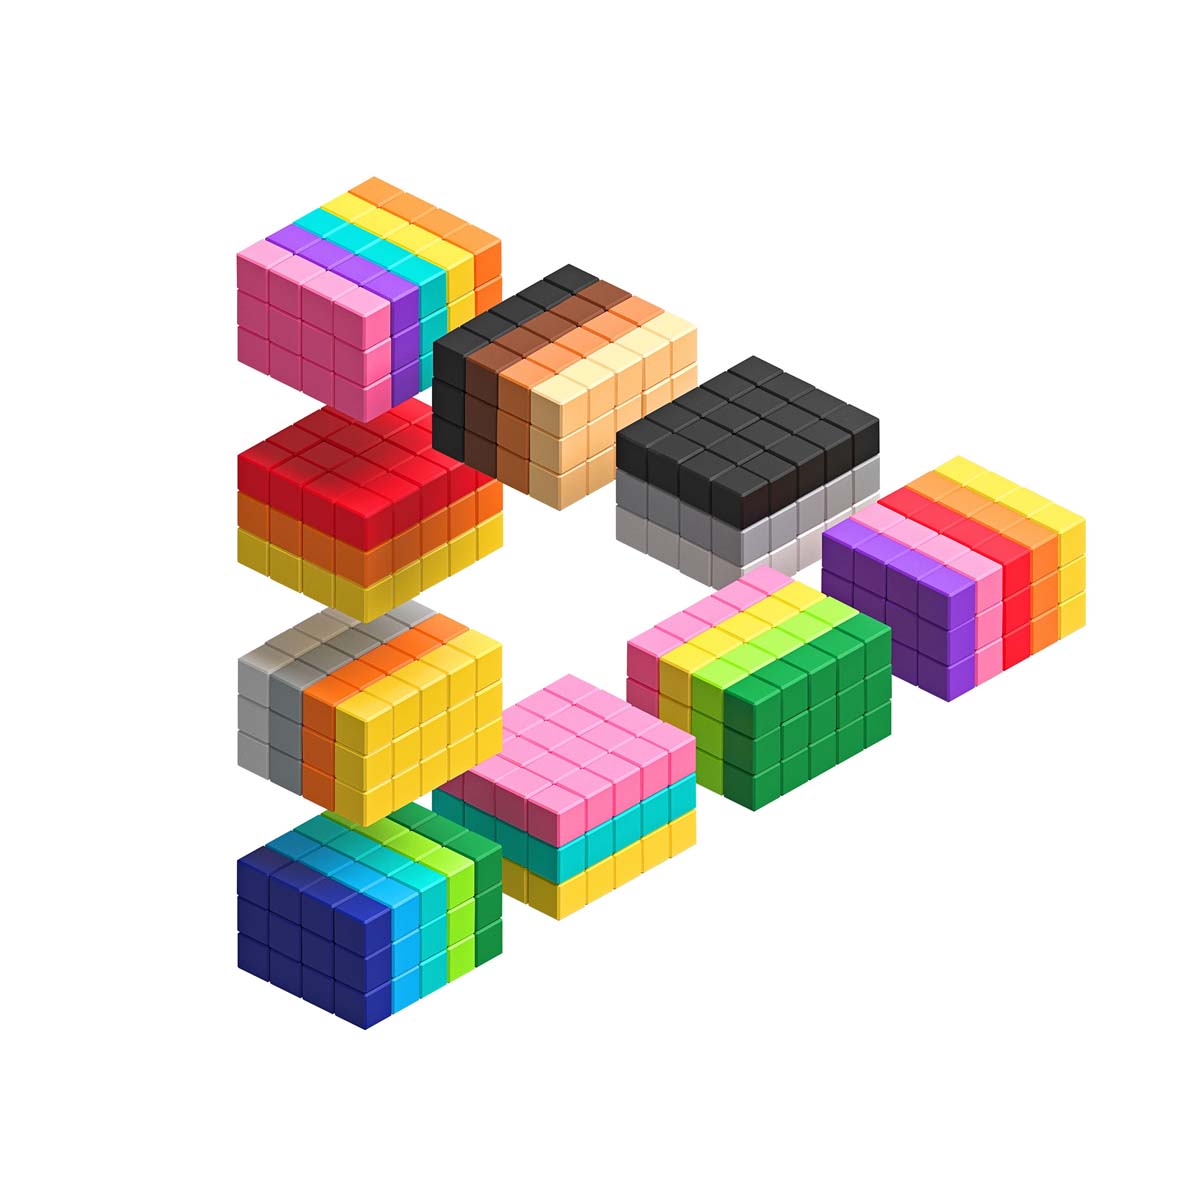 Met de PIXIO Abstract Tropic kun je je creativiteit helemaal kwijt. Met deze magnetische blokken kun je 3D pixel kunstwerken maken. In de set vind je 60 blokken in 5 verschillende, tropische kleuren. In de app word je stap voor stap meegenomen om de mooiste creaties te maken met dit toffe magneetspeelgoed! VanZus.